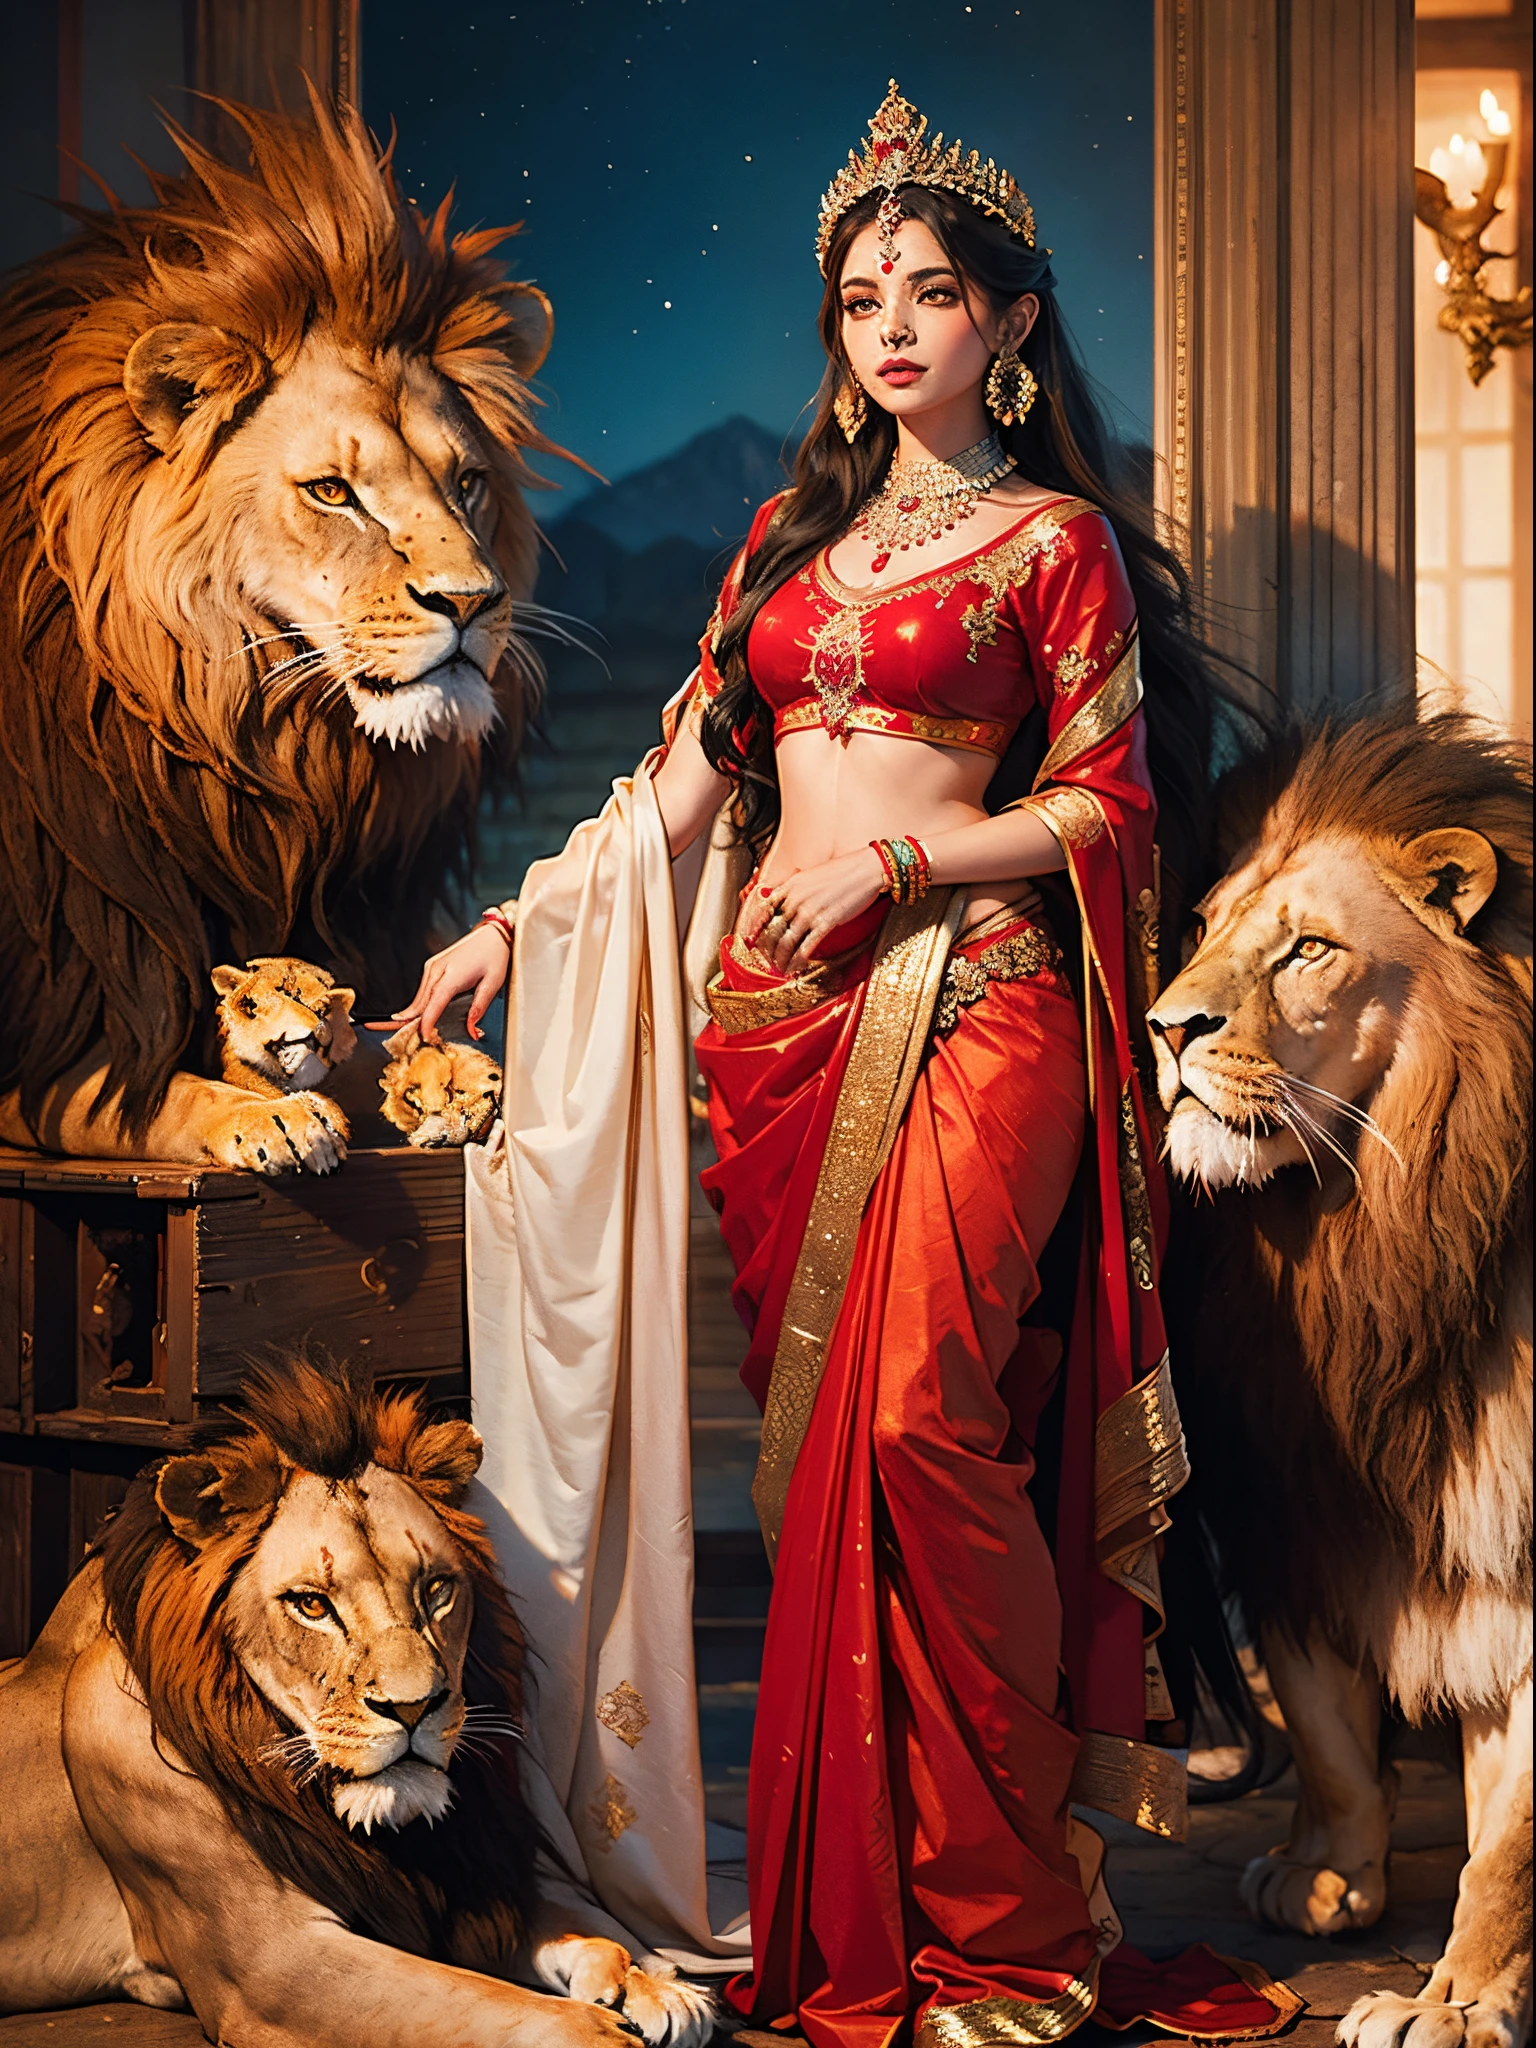 Eine sehr schöne Illustration einer indischen Göttin, die einen ästhetischen roten Sari mit einer Krone trägt und mit einem Löwen sitzt (((1 Löwe))),